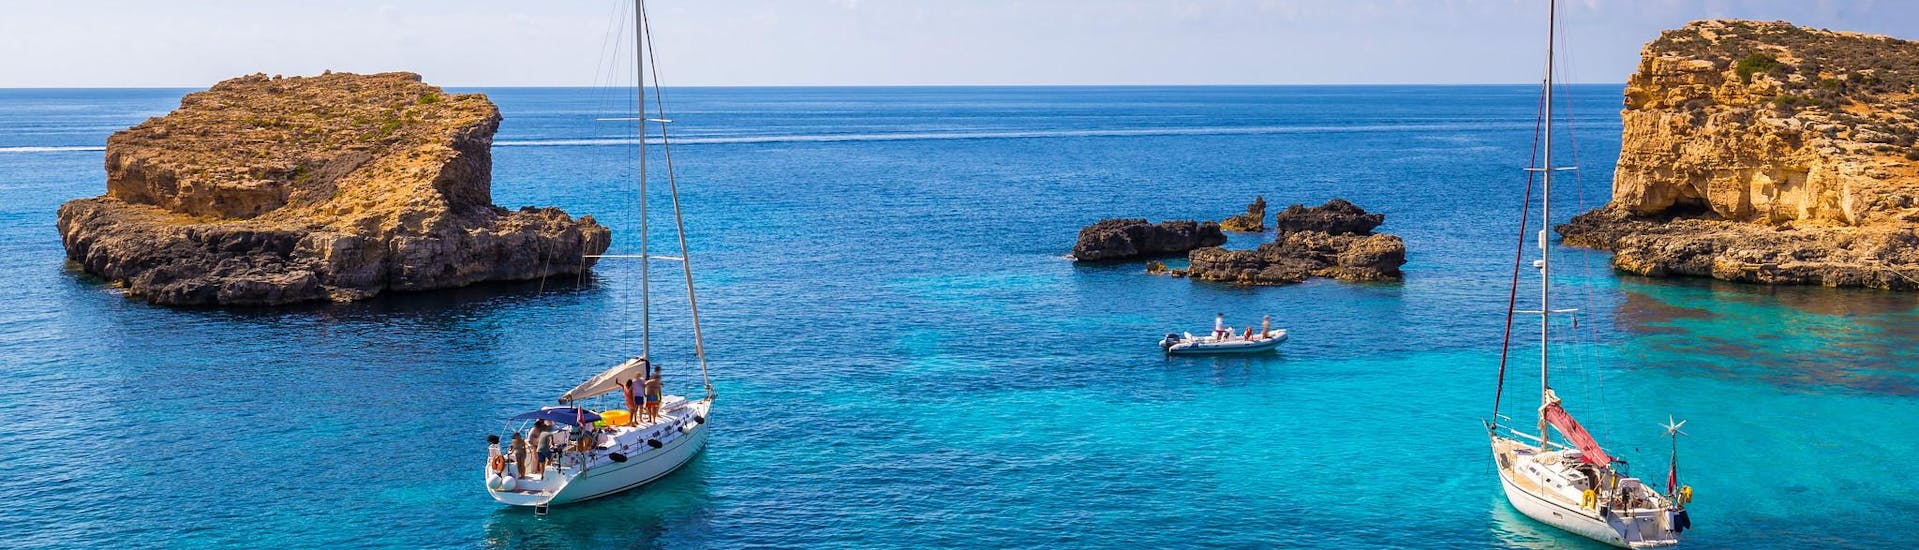 Plusieurs bateaux dans le lagon bleu de Malte lors d'une excursion en bateau.